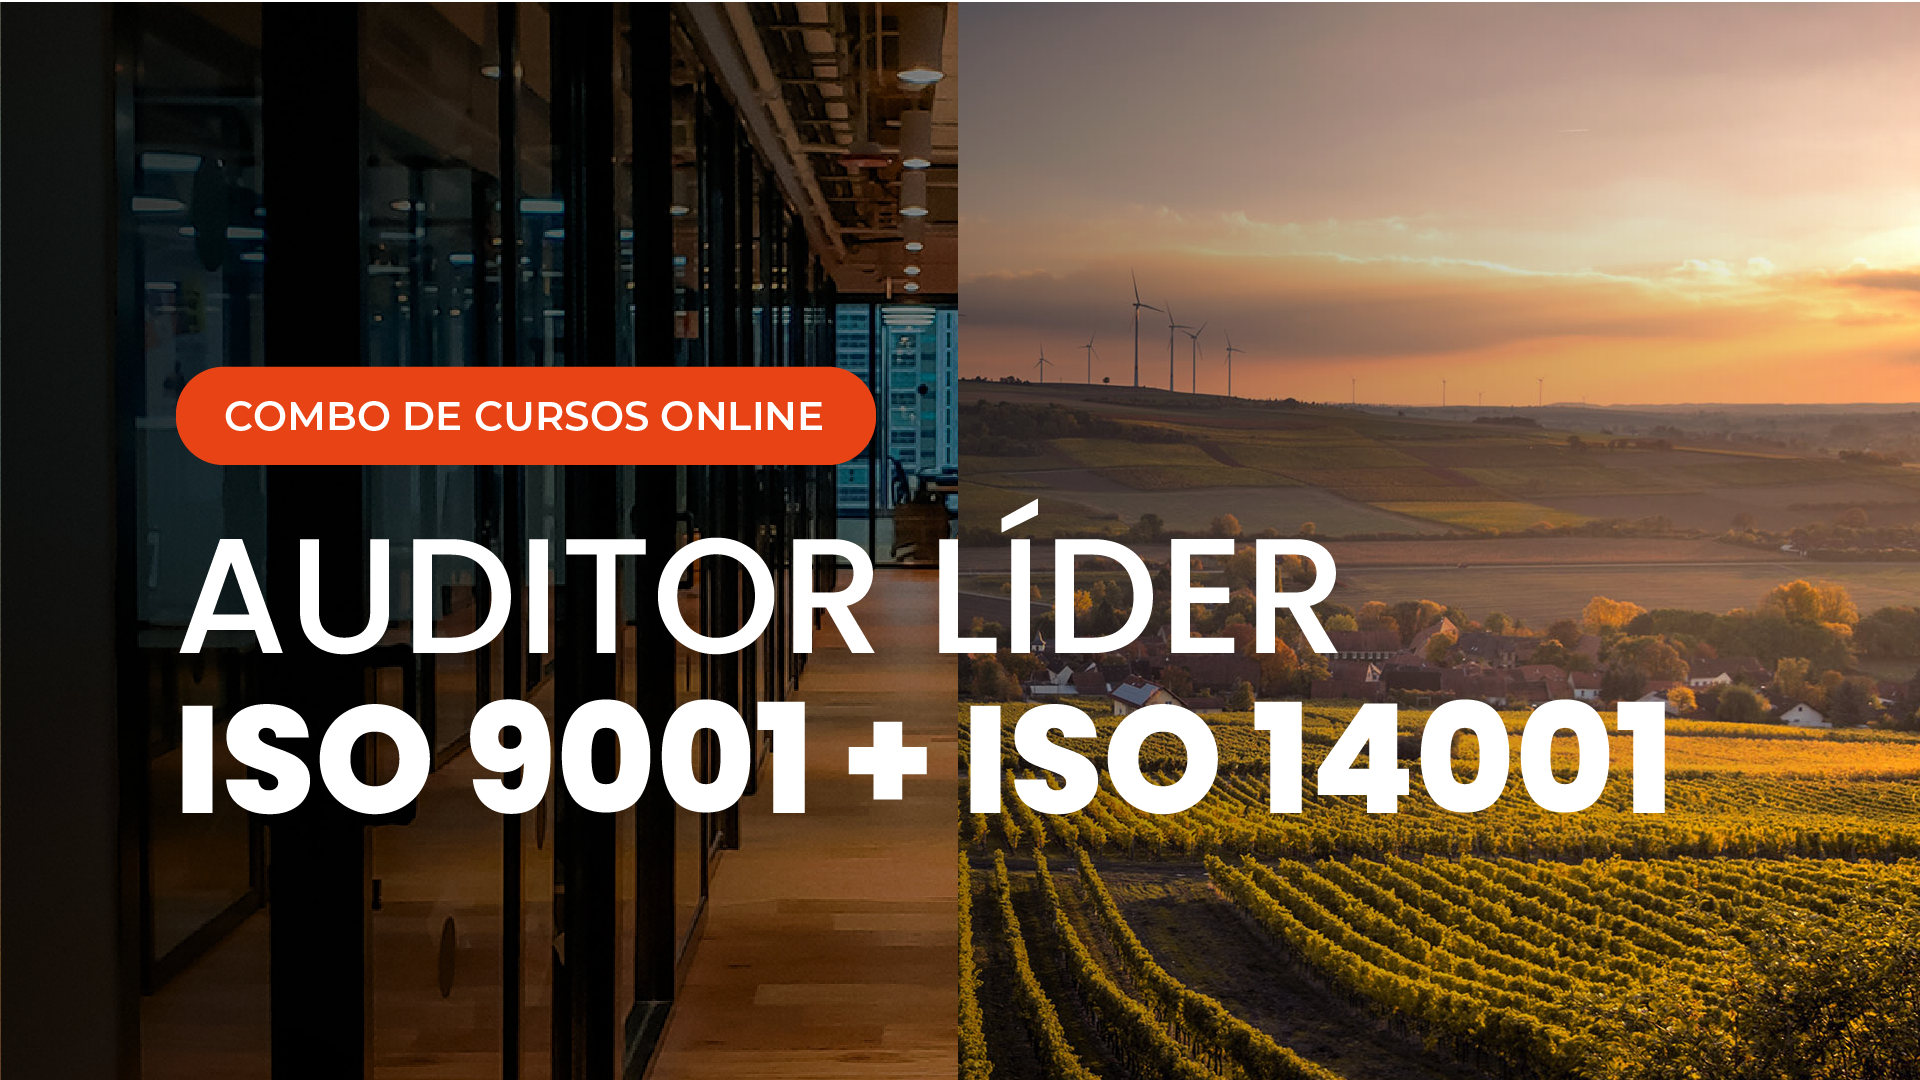 Curso Online de Auditor Líder ISO 9001 Sistema de Gestão da Qualidade e Auditor Líder ISO 14001 Sistema de Gestão Ambiental